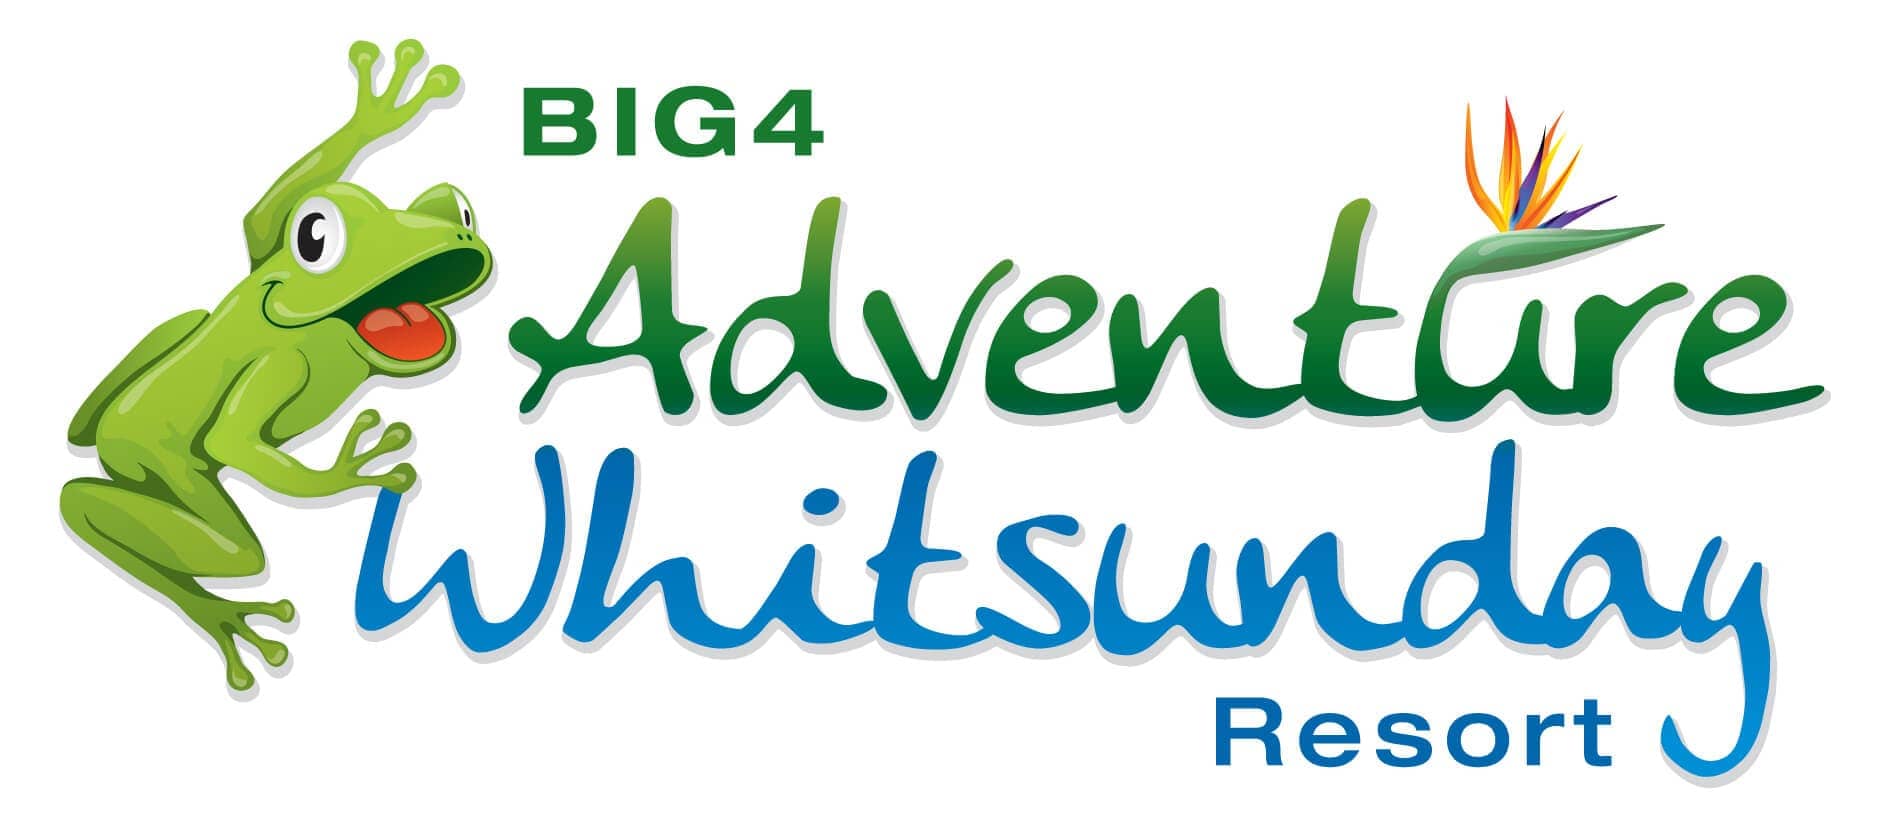 BIG4 Adventure Whitsunday Resort